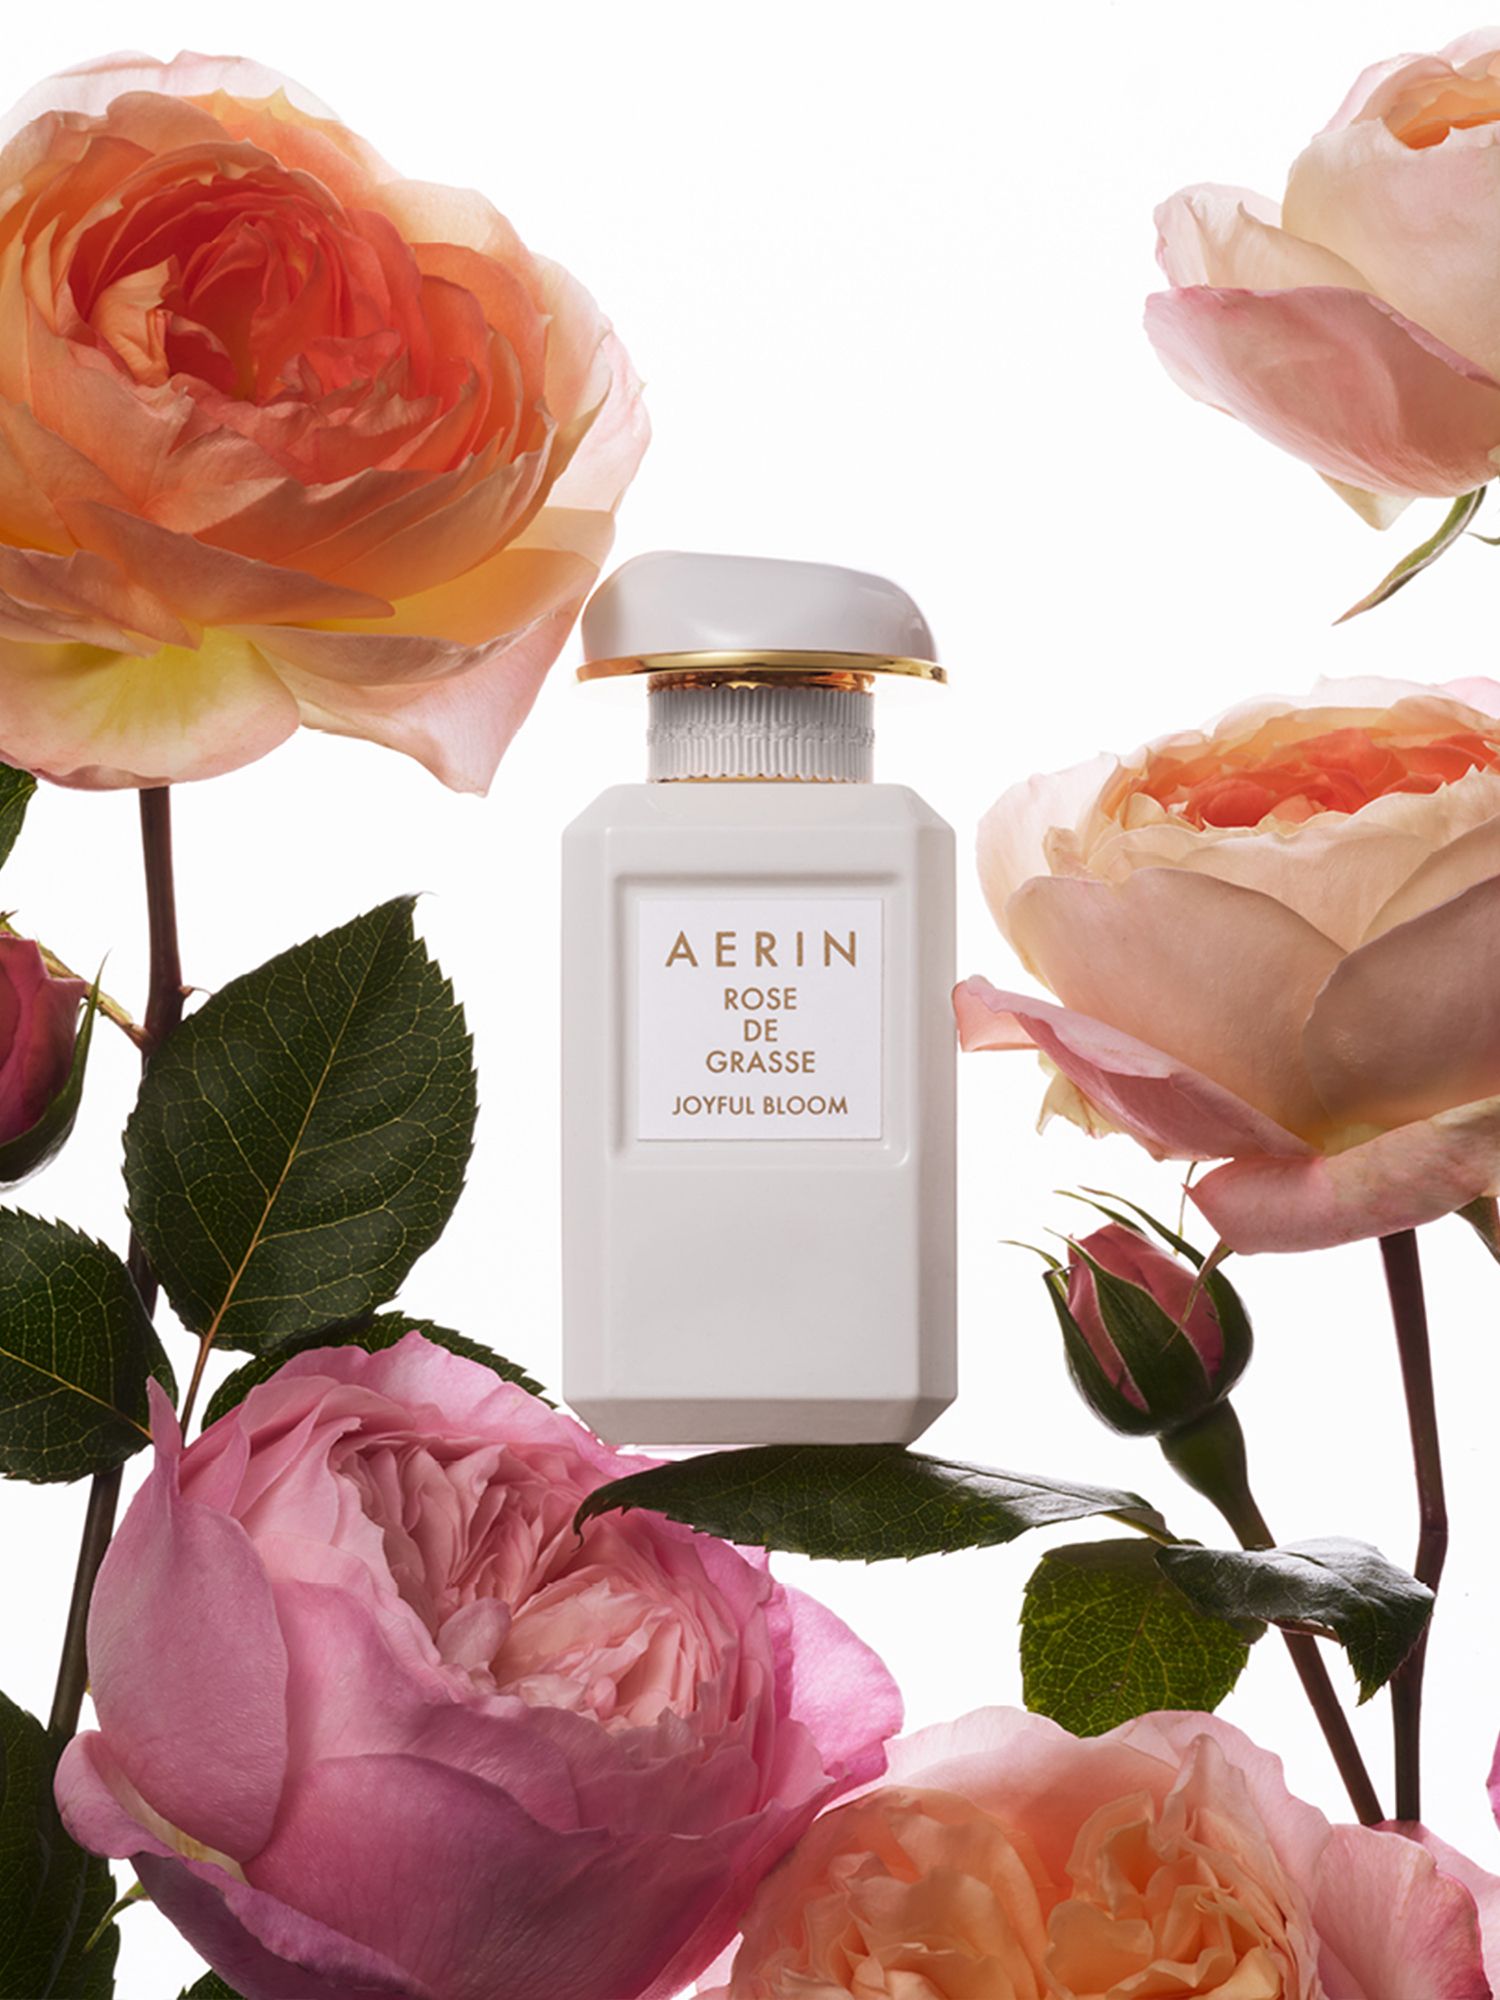 AERIN Rose de Grasse Joyful Bloom Eau de Parfum, 50ml 2